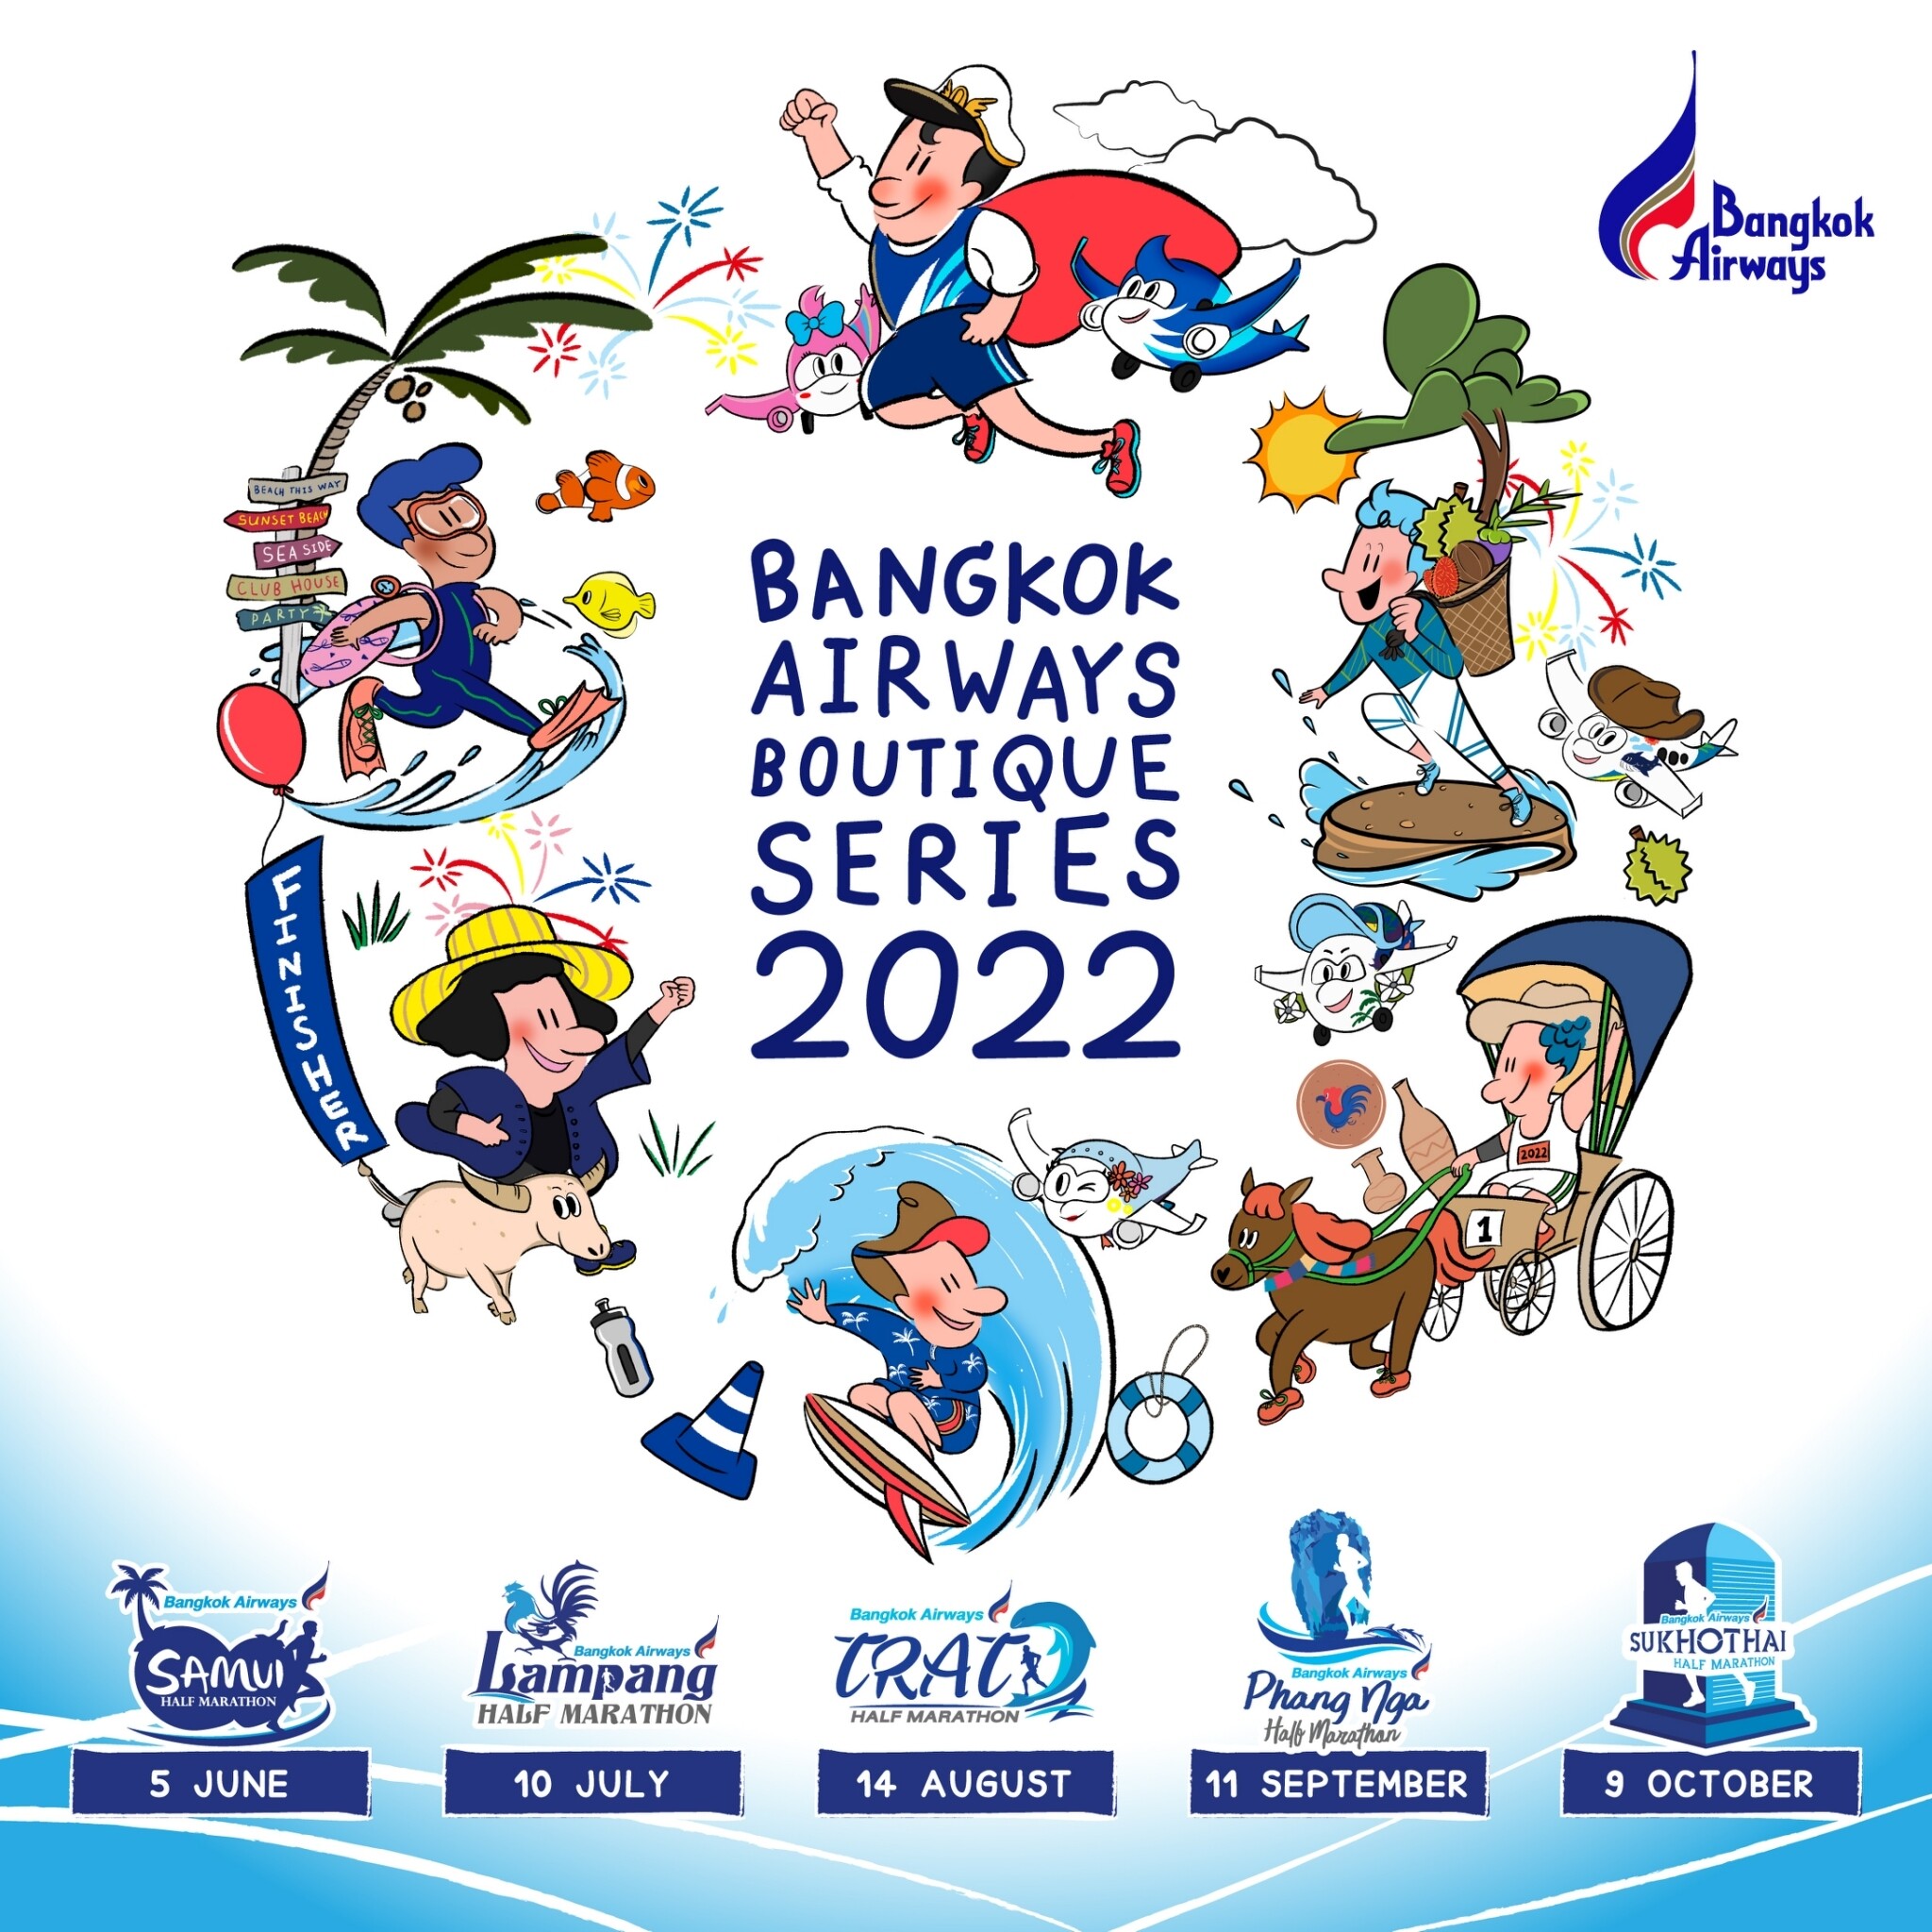 บางกอกแอร์เวย์ส เปิดรับสมัครนักวิ่งมาราธอนในรายการแข่งขัน "บางกอกแอร์เวย์ส บูทีค ซีรีส์ 2022" ใน 5 เมืองท่องเที่ยว